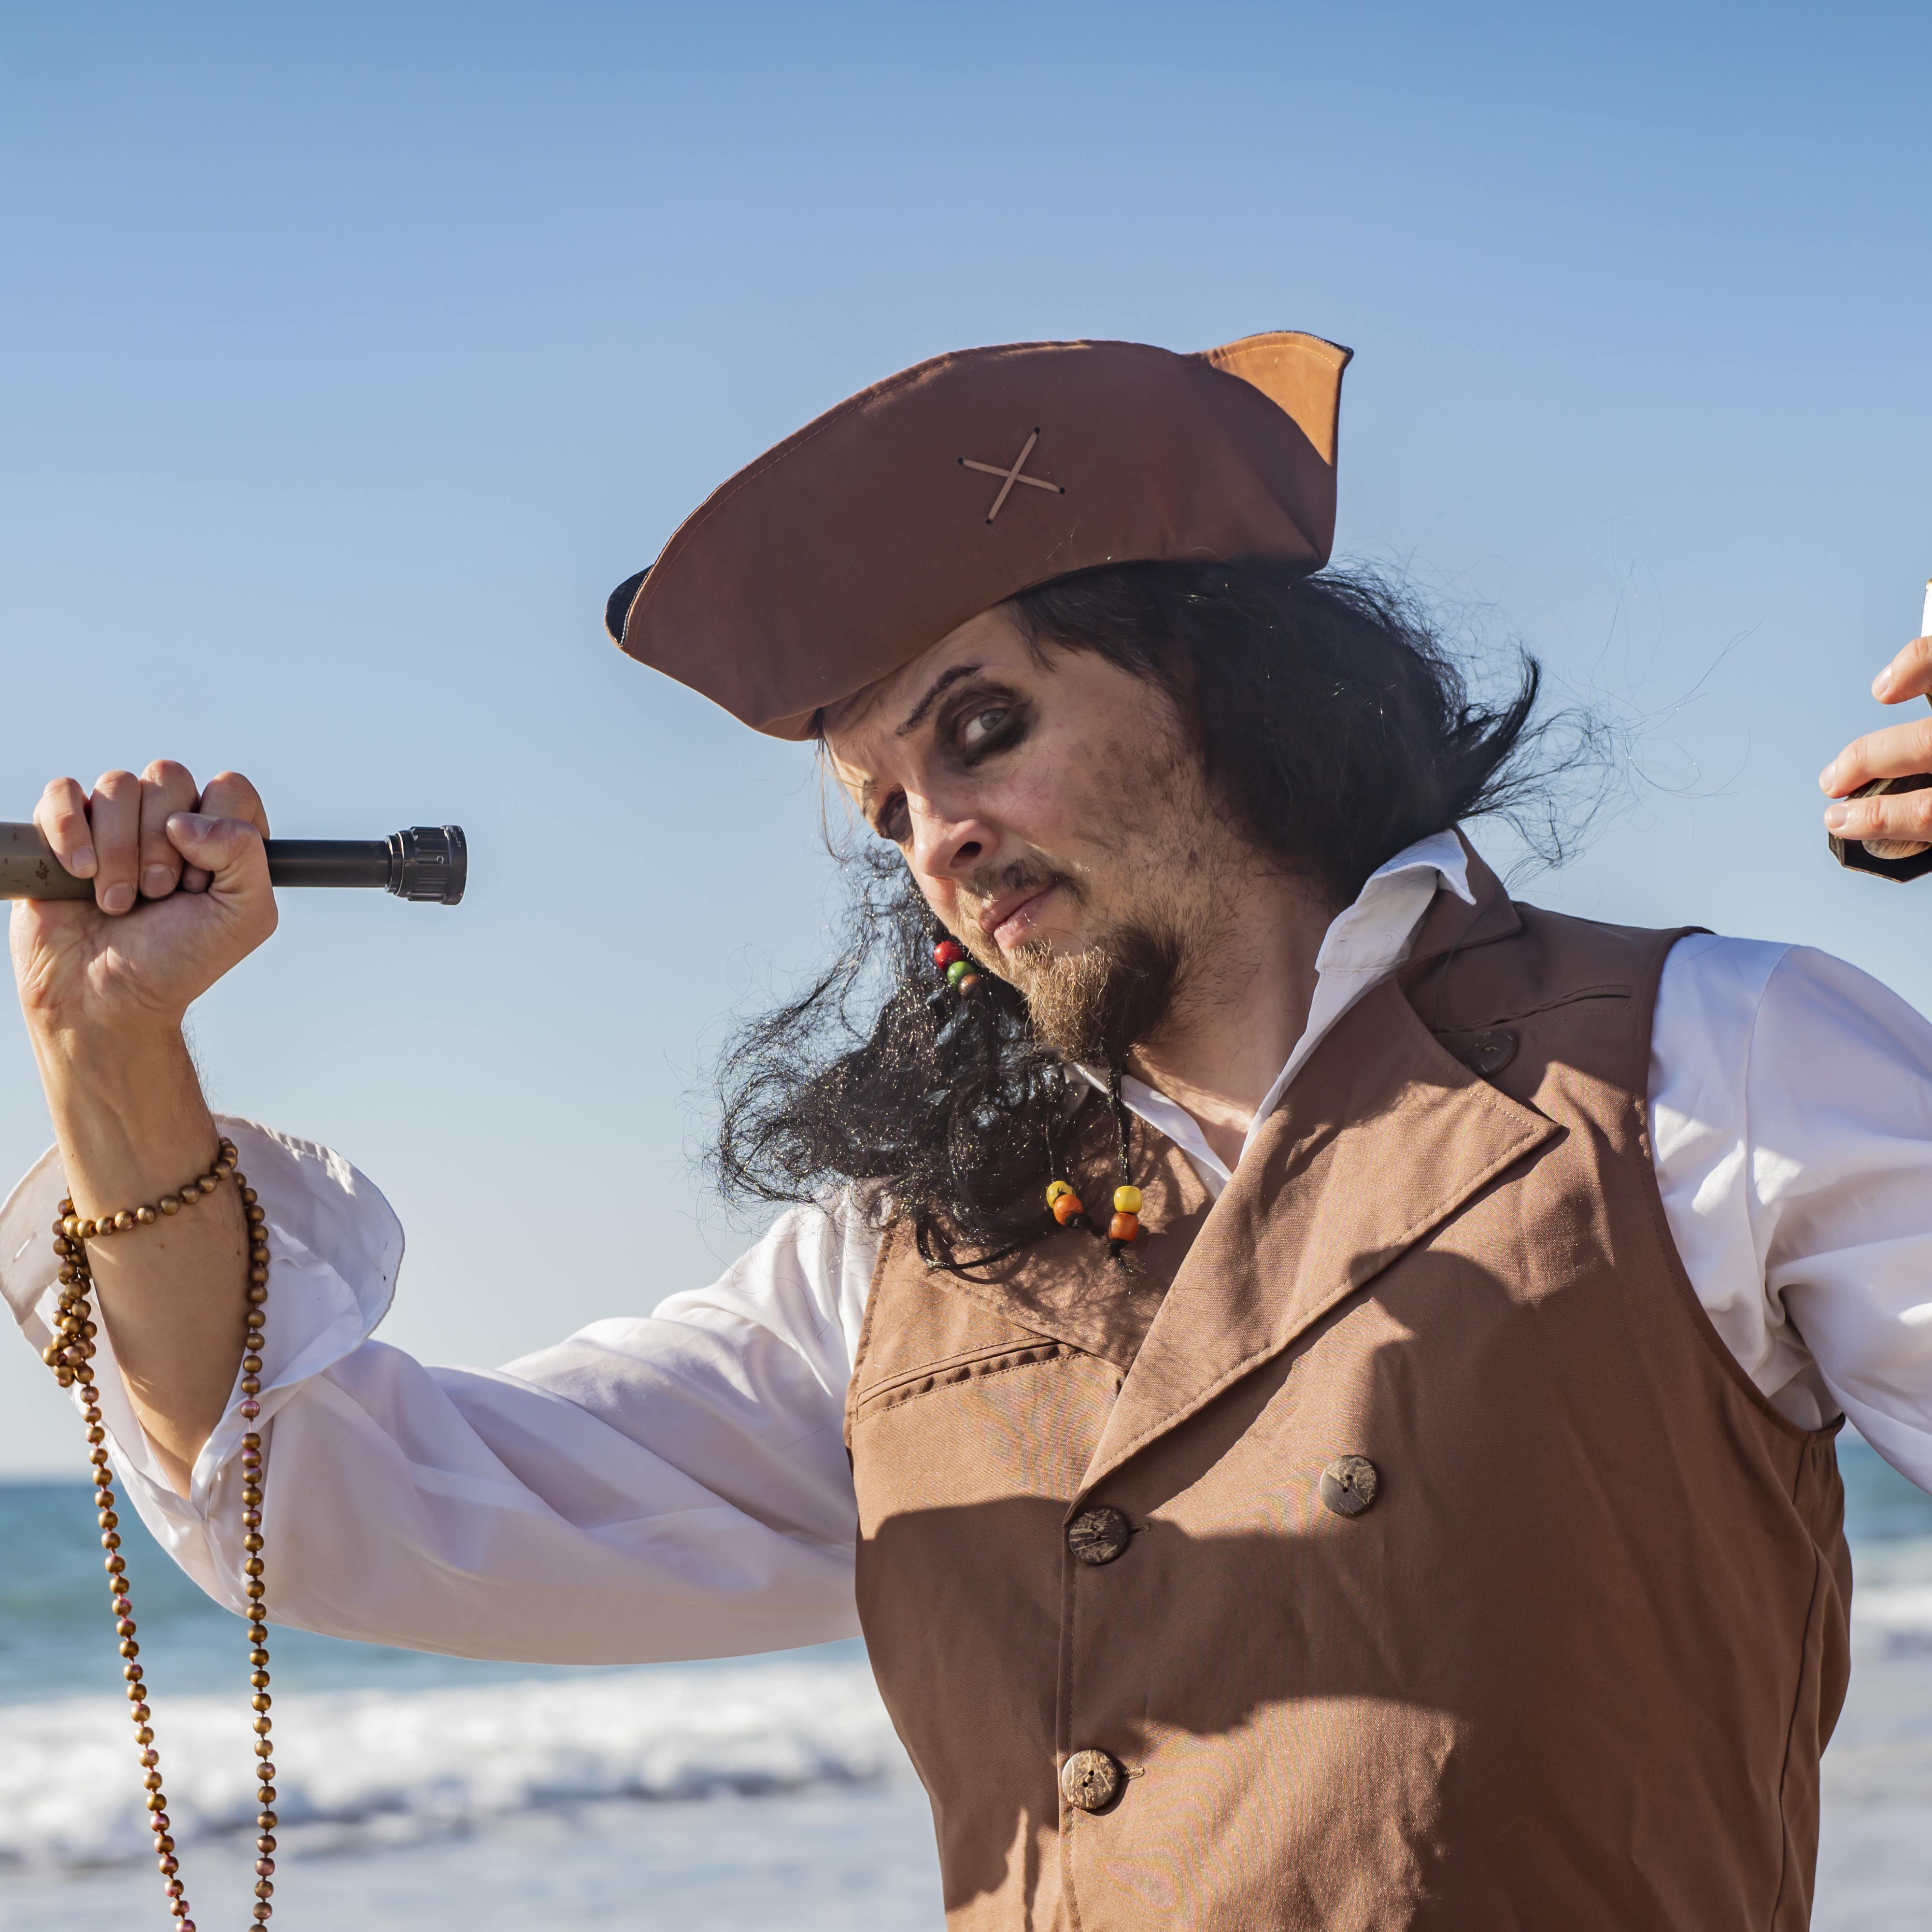 Man in a pirate costume at sea